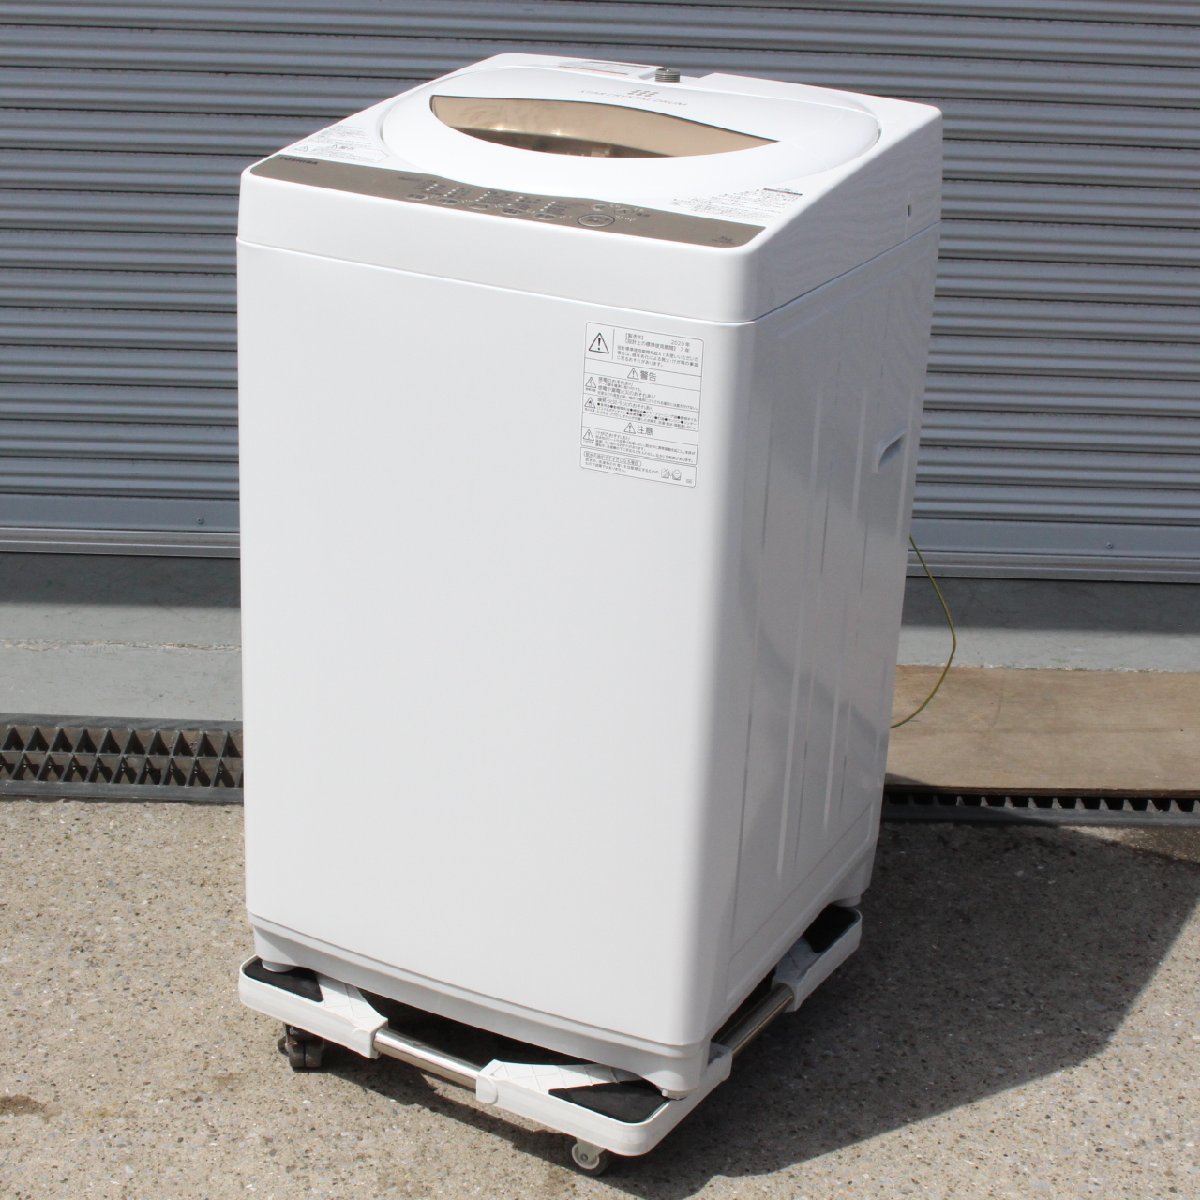 横浜市港北区にて 東芝 全自動洗濯機 AW-5G8 2020年製 を出張買取させて頂きました。